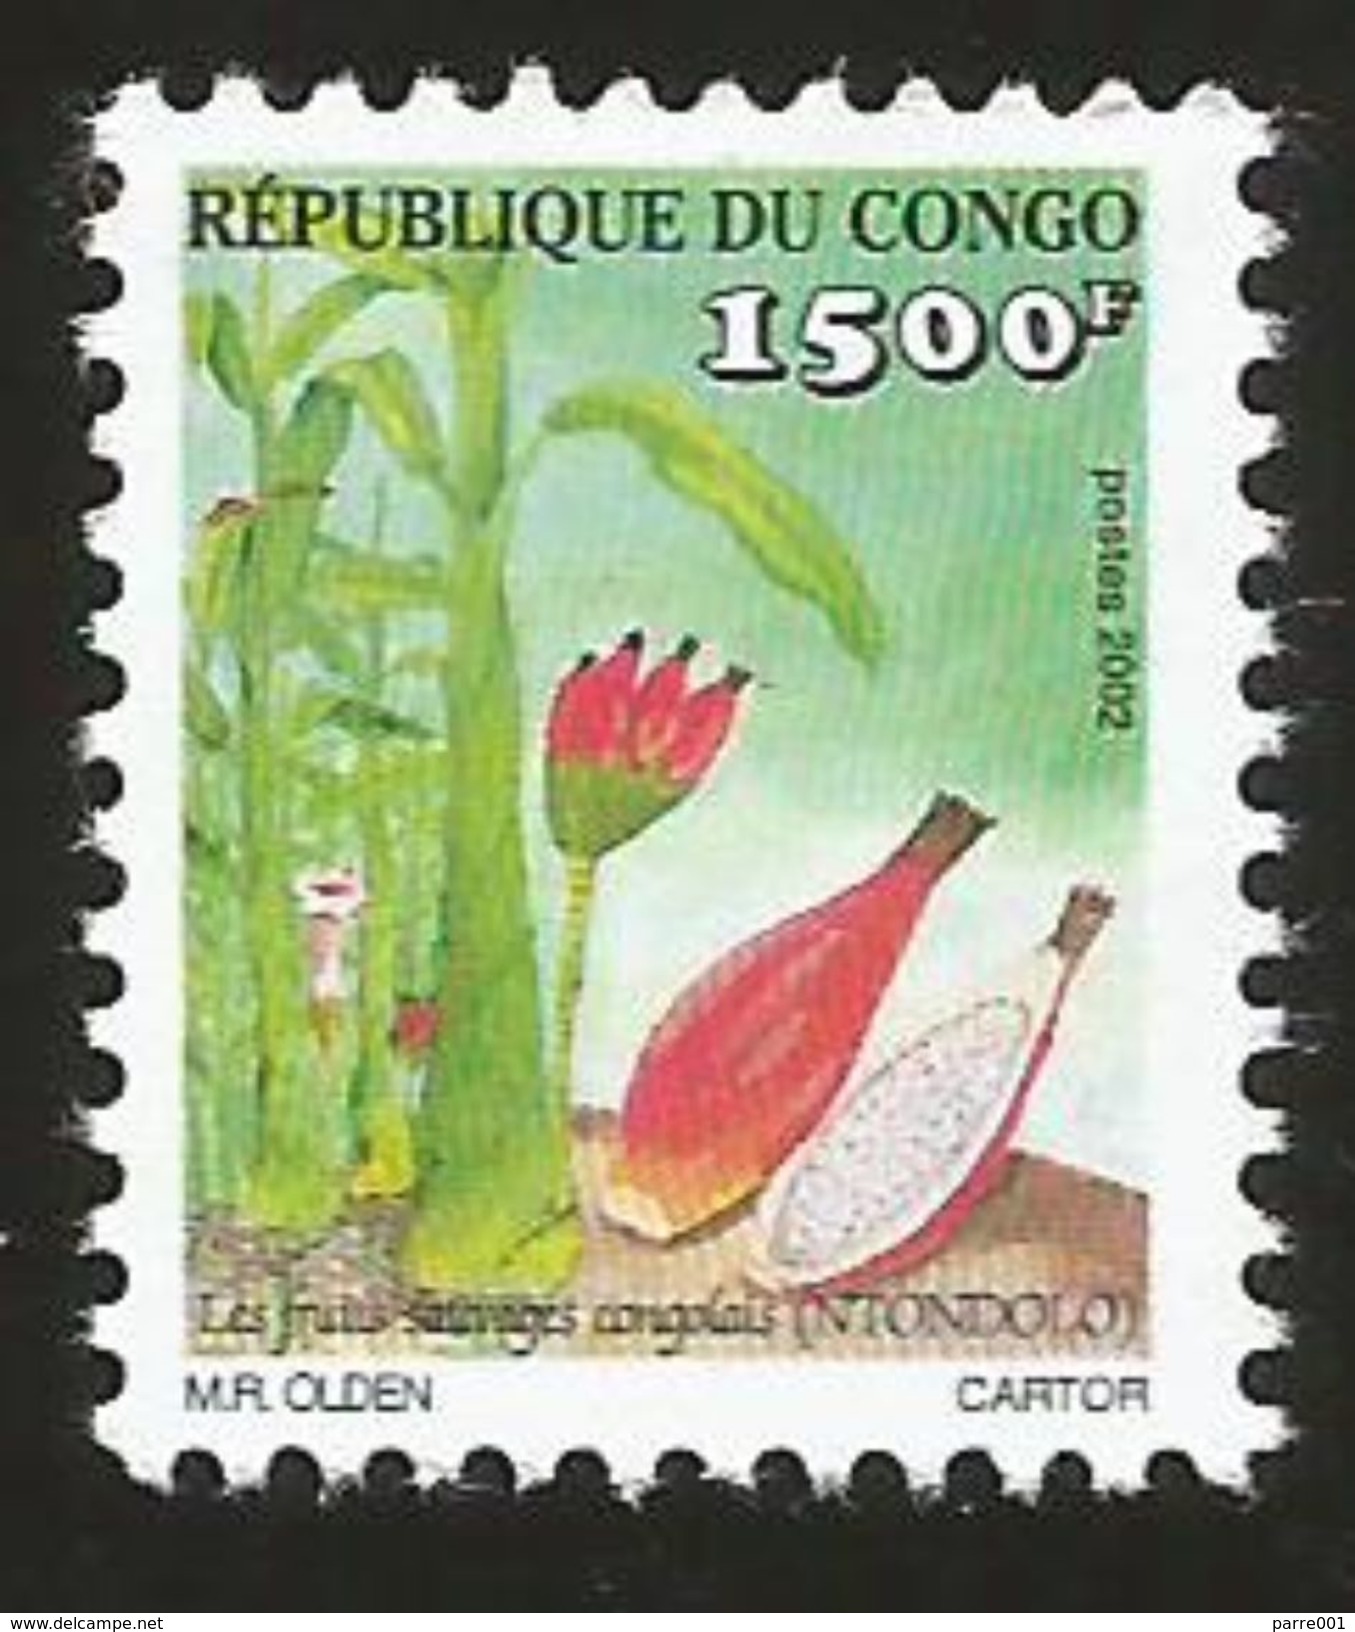 Congo 2009 Unreported 1500f Value Of Fruit Set Issued In 2002 Mint - Ongebruikt